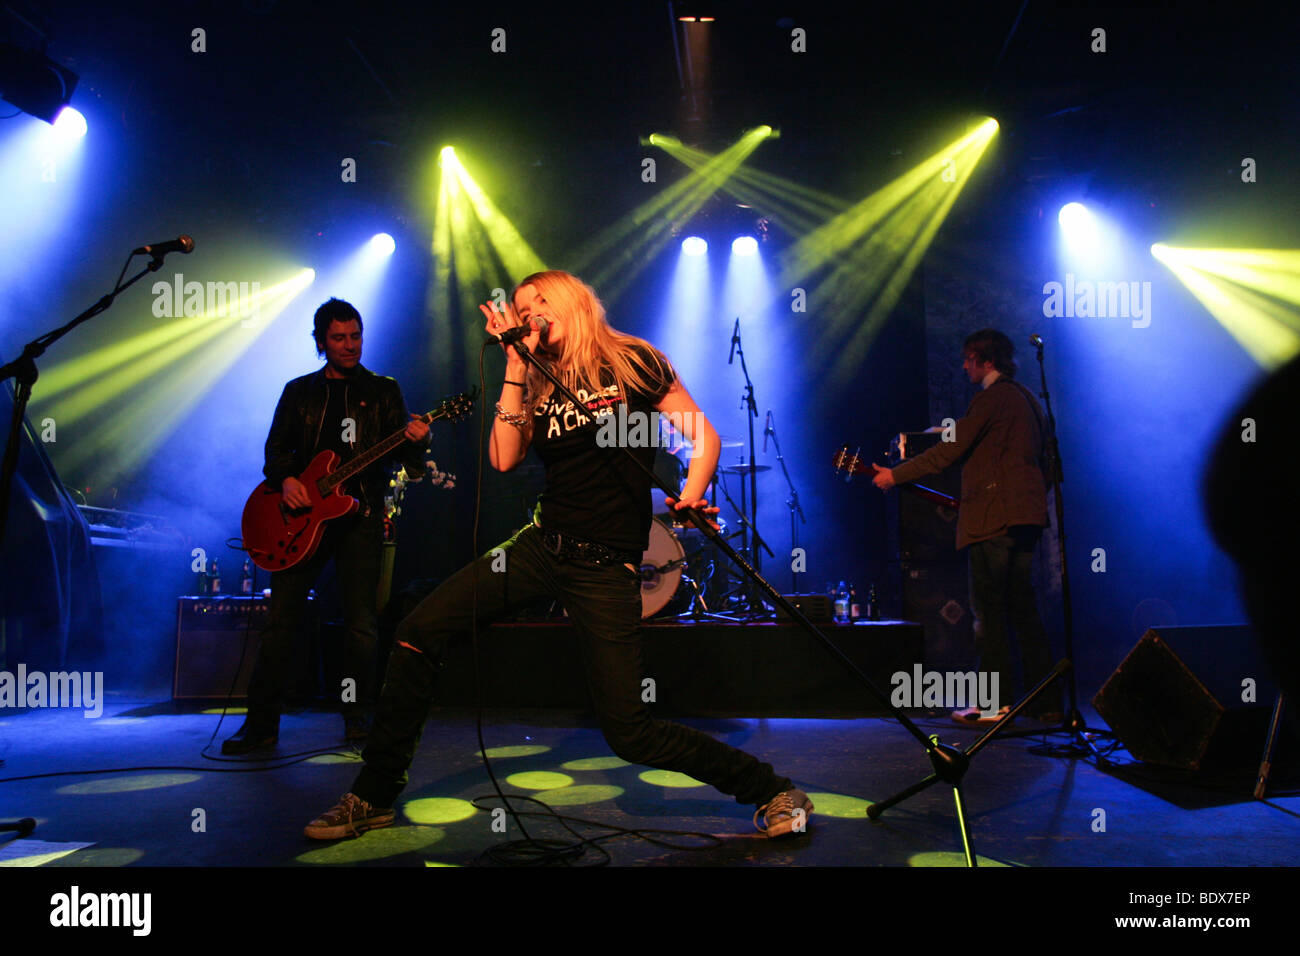 Banda pop alemana Klee interpretando en vivo en el concierto Schueuer house, Lucerna, Suiza, Europa Foto de stock